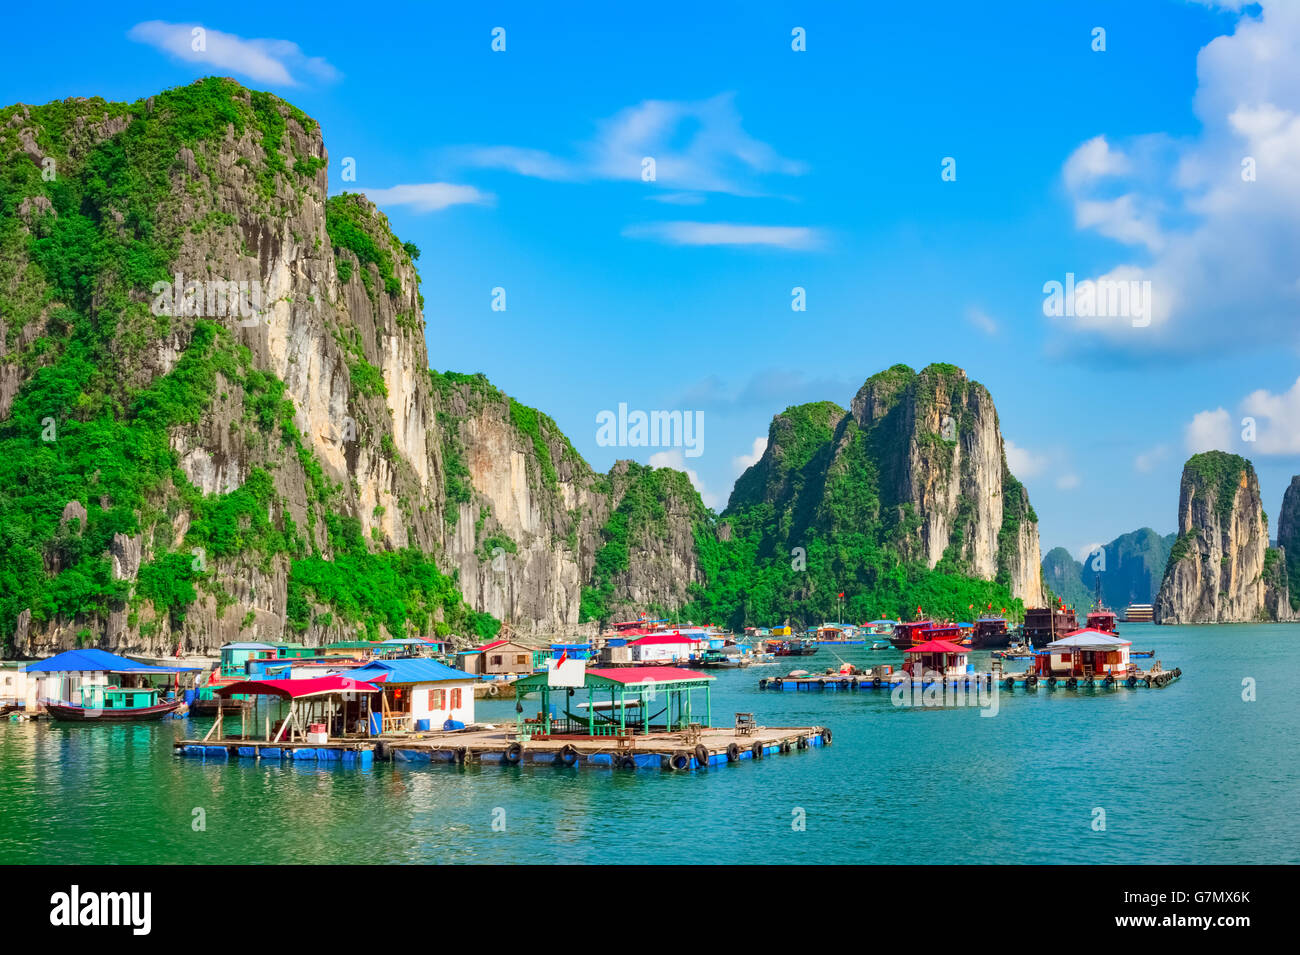 Floating villaggio di pescatori e le isole della roccia nella baia di Halong, Vietnam, sud-est asiatico. UNESCO - Sito Patrimonio dell'umanità. Foto Stock